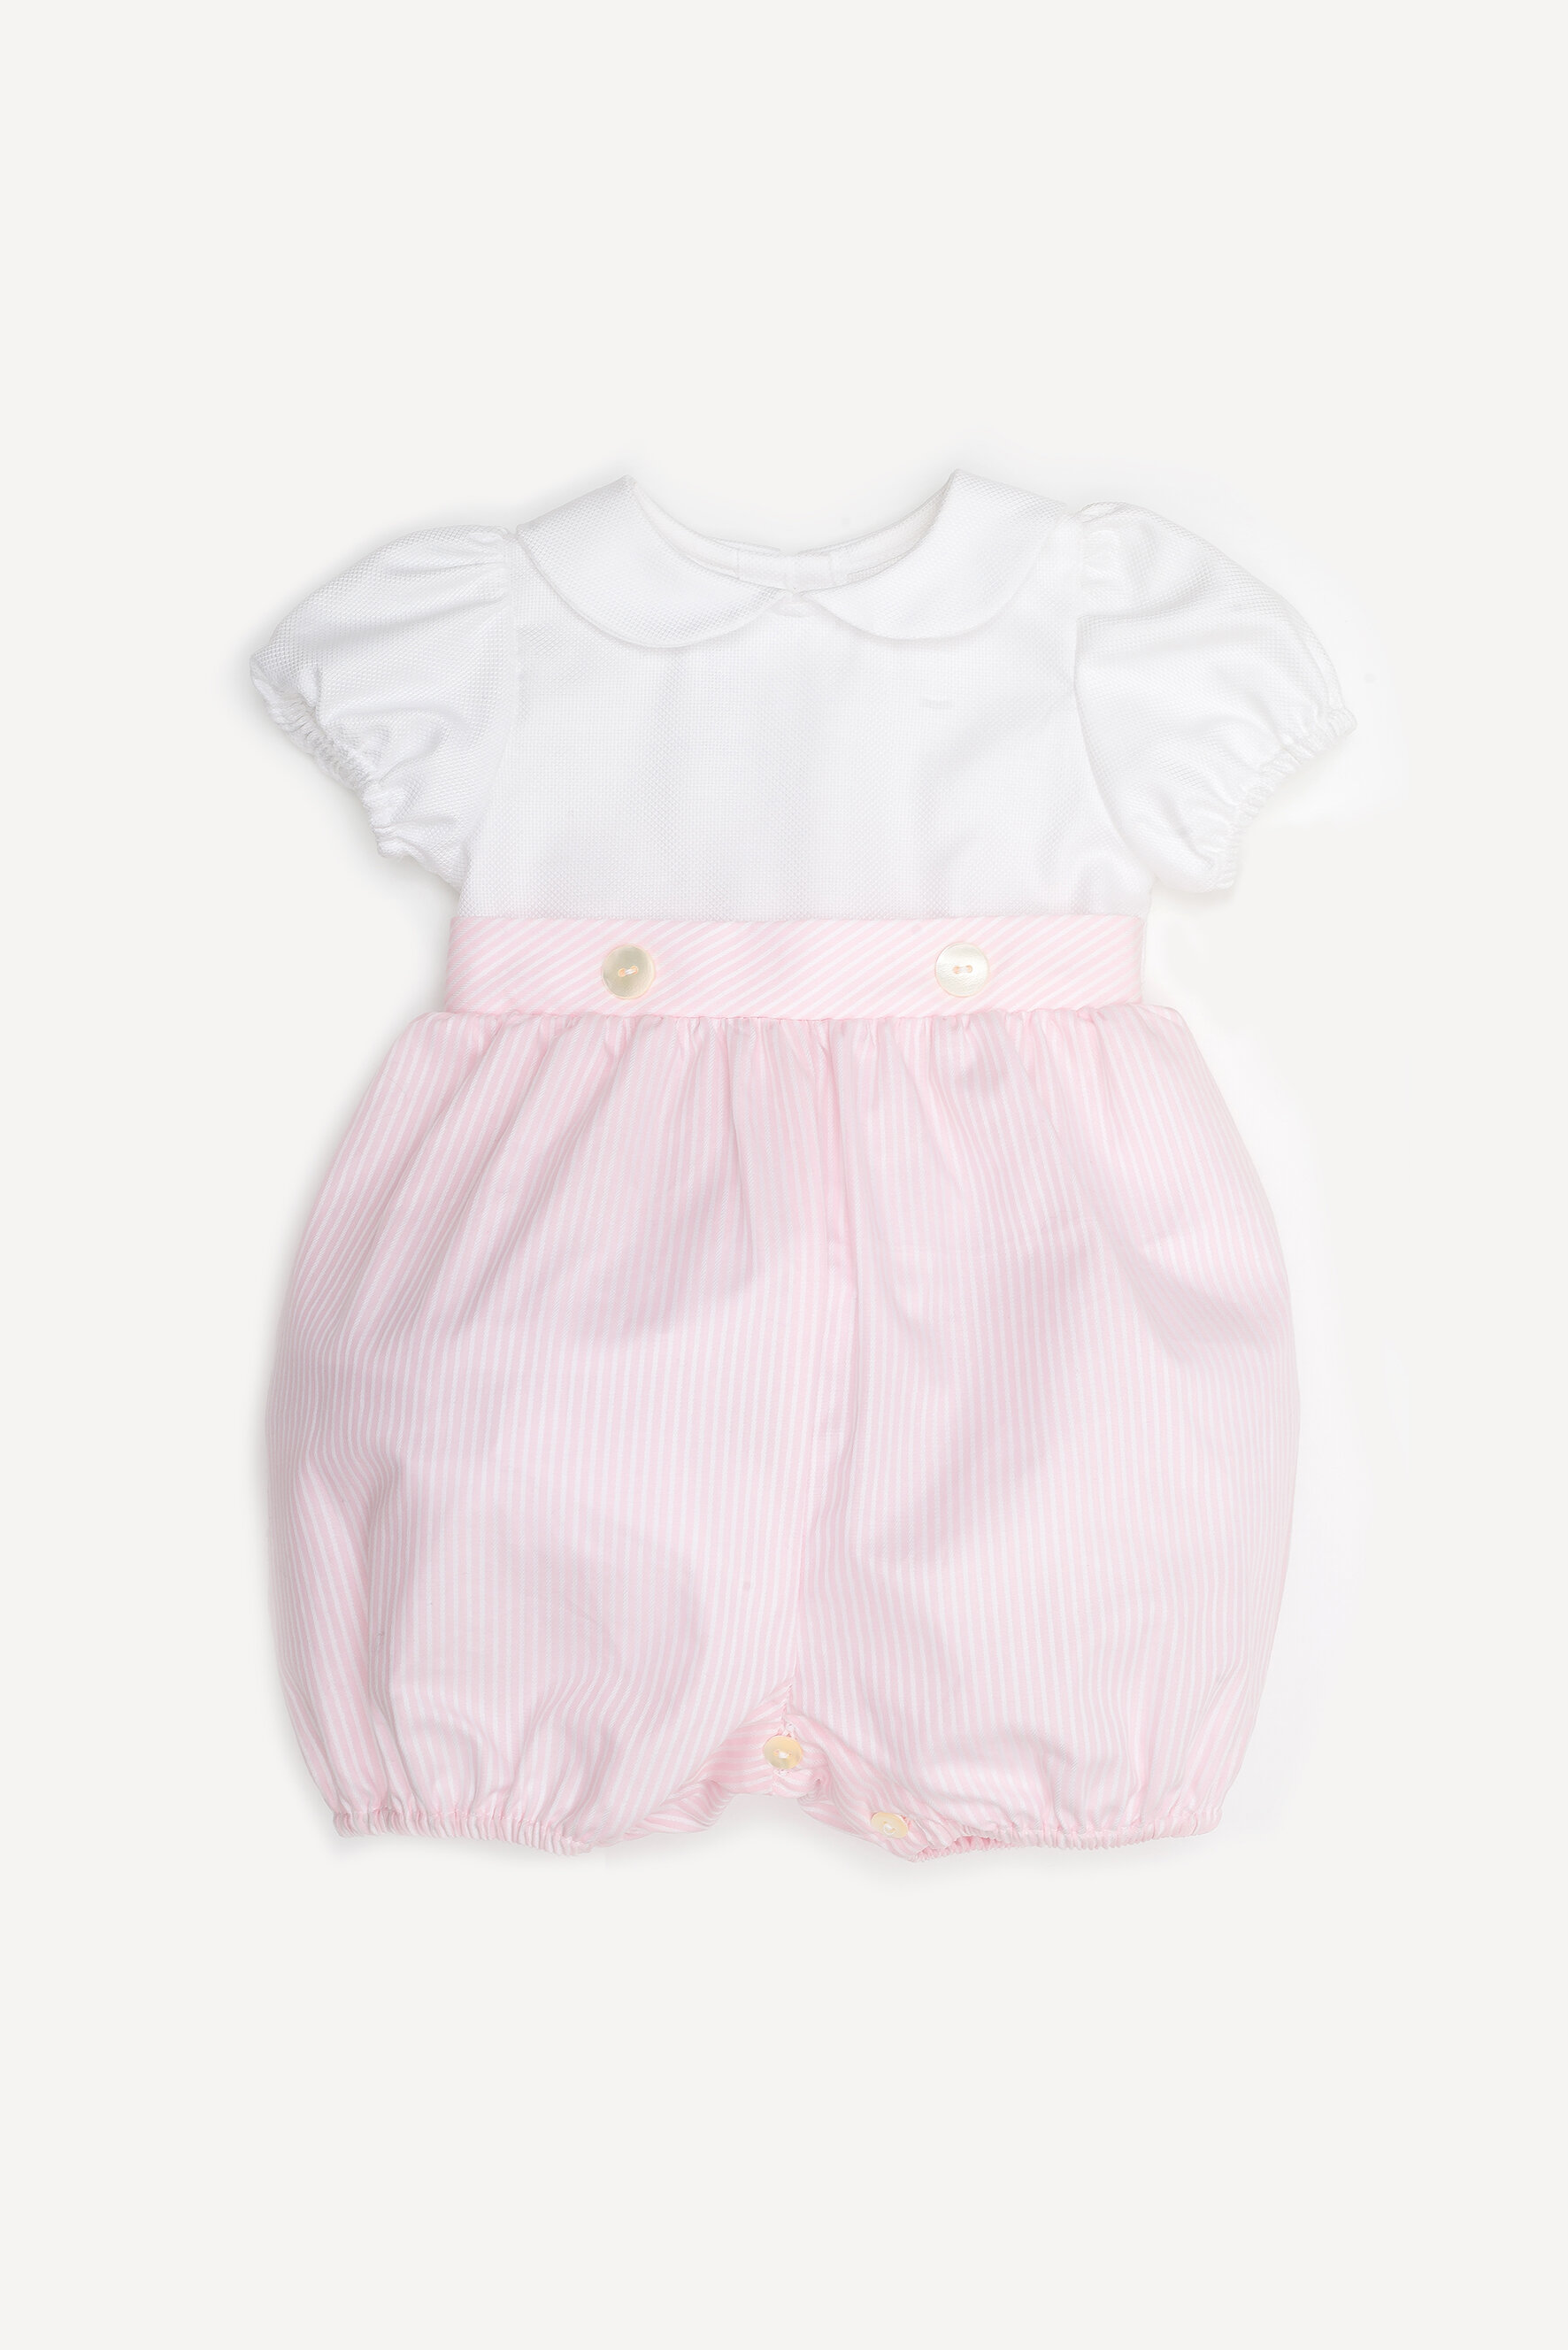 Pagliaccetto neonata bianco e rosa